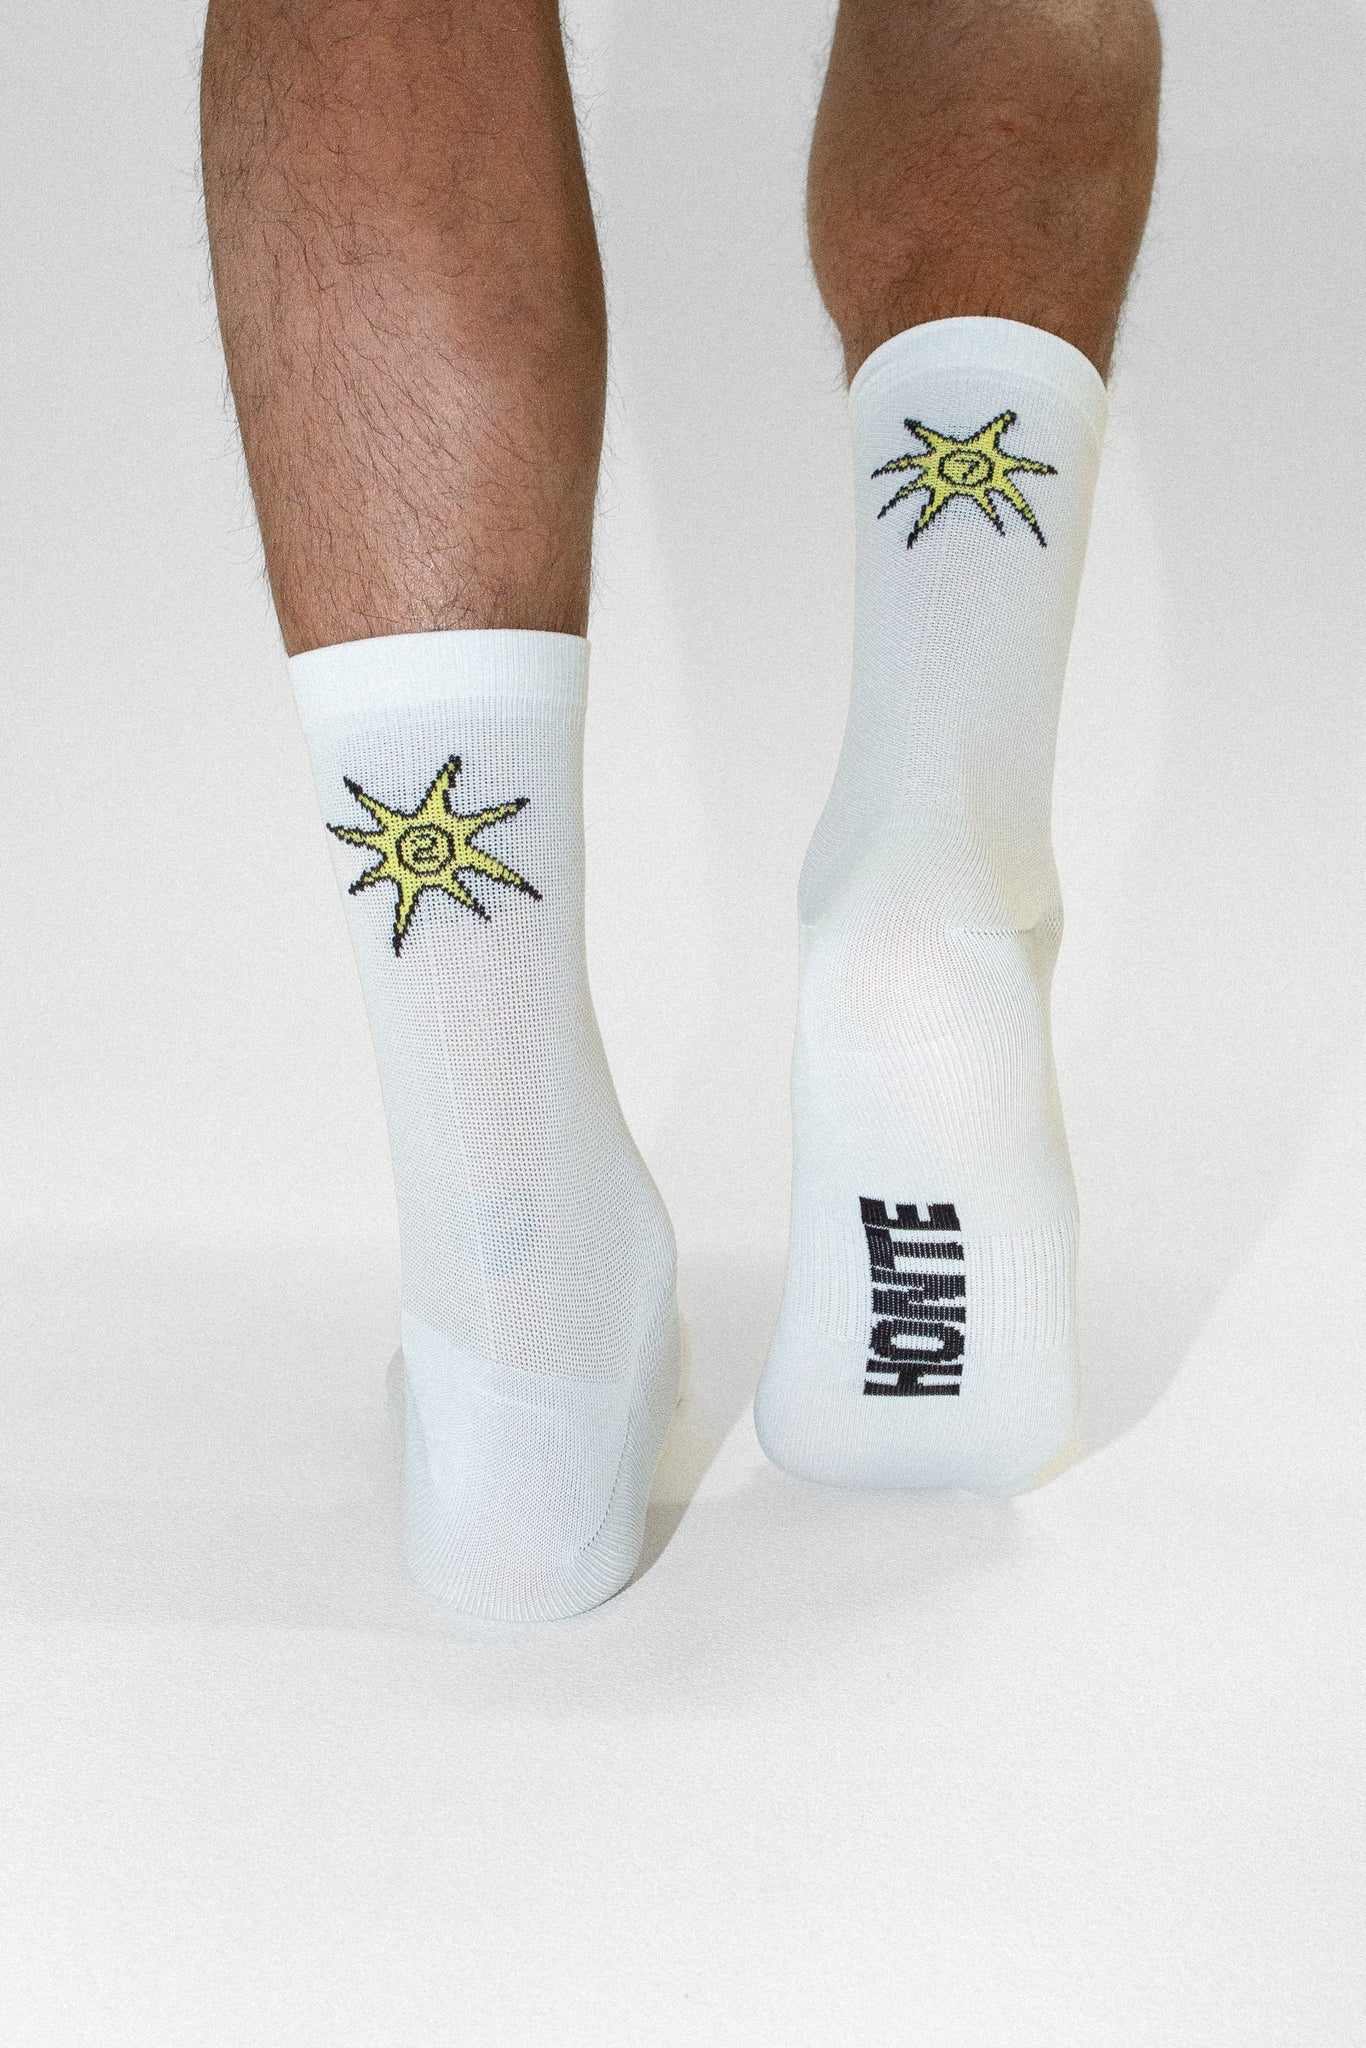 'Forme/Honte' 27 Socks